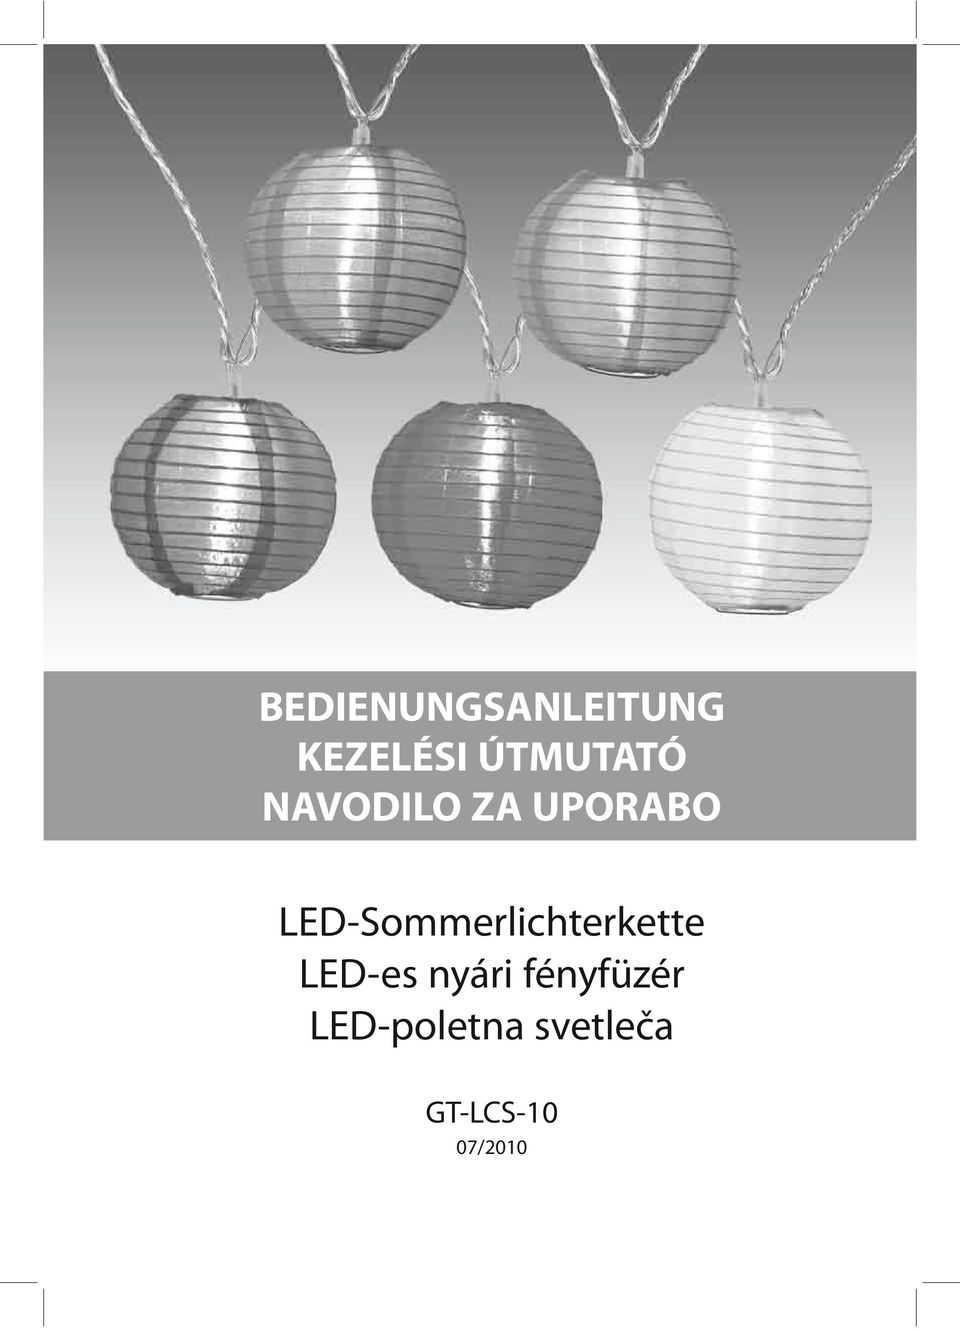 LED-Sommerlichterkette LED-es nyári